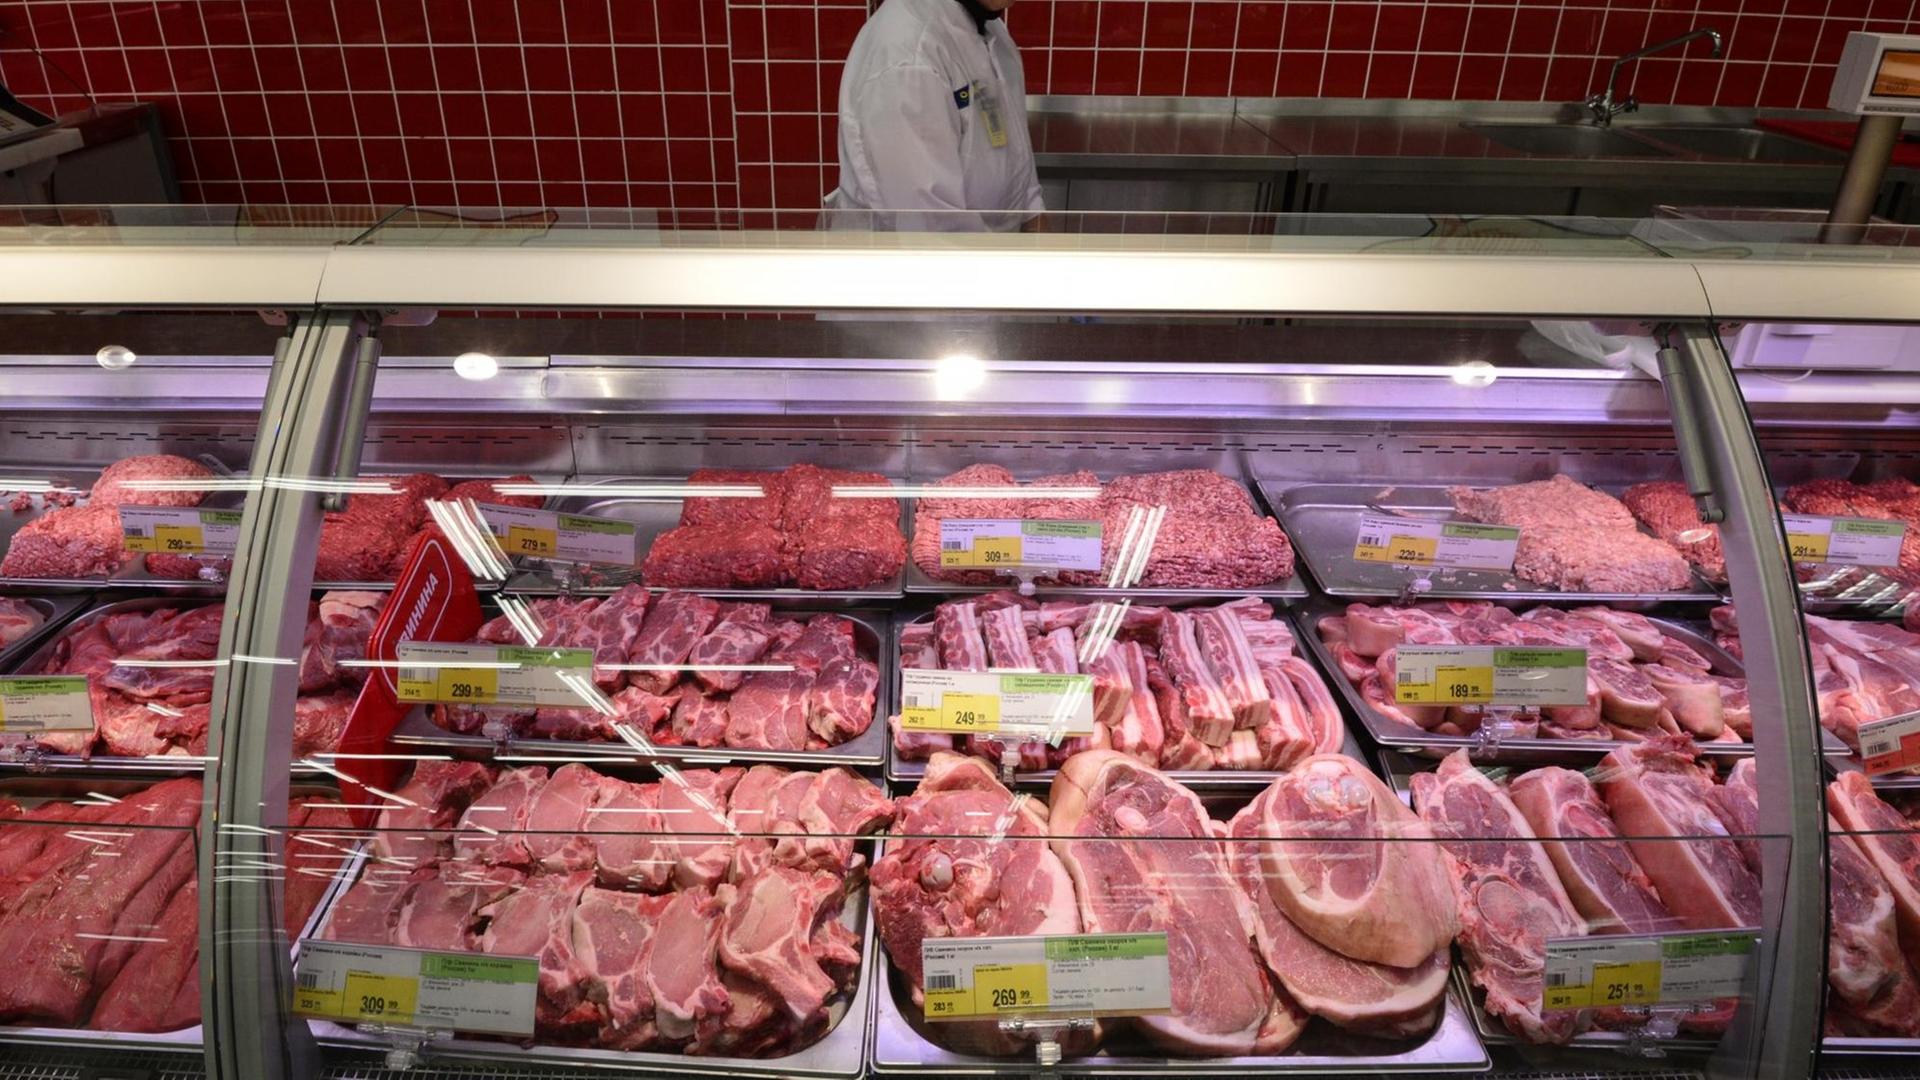 Fleisch liegt in einer Supermarkttheke.